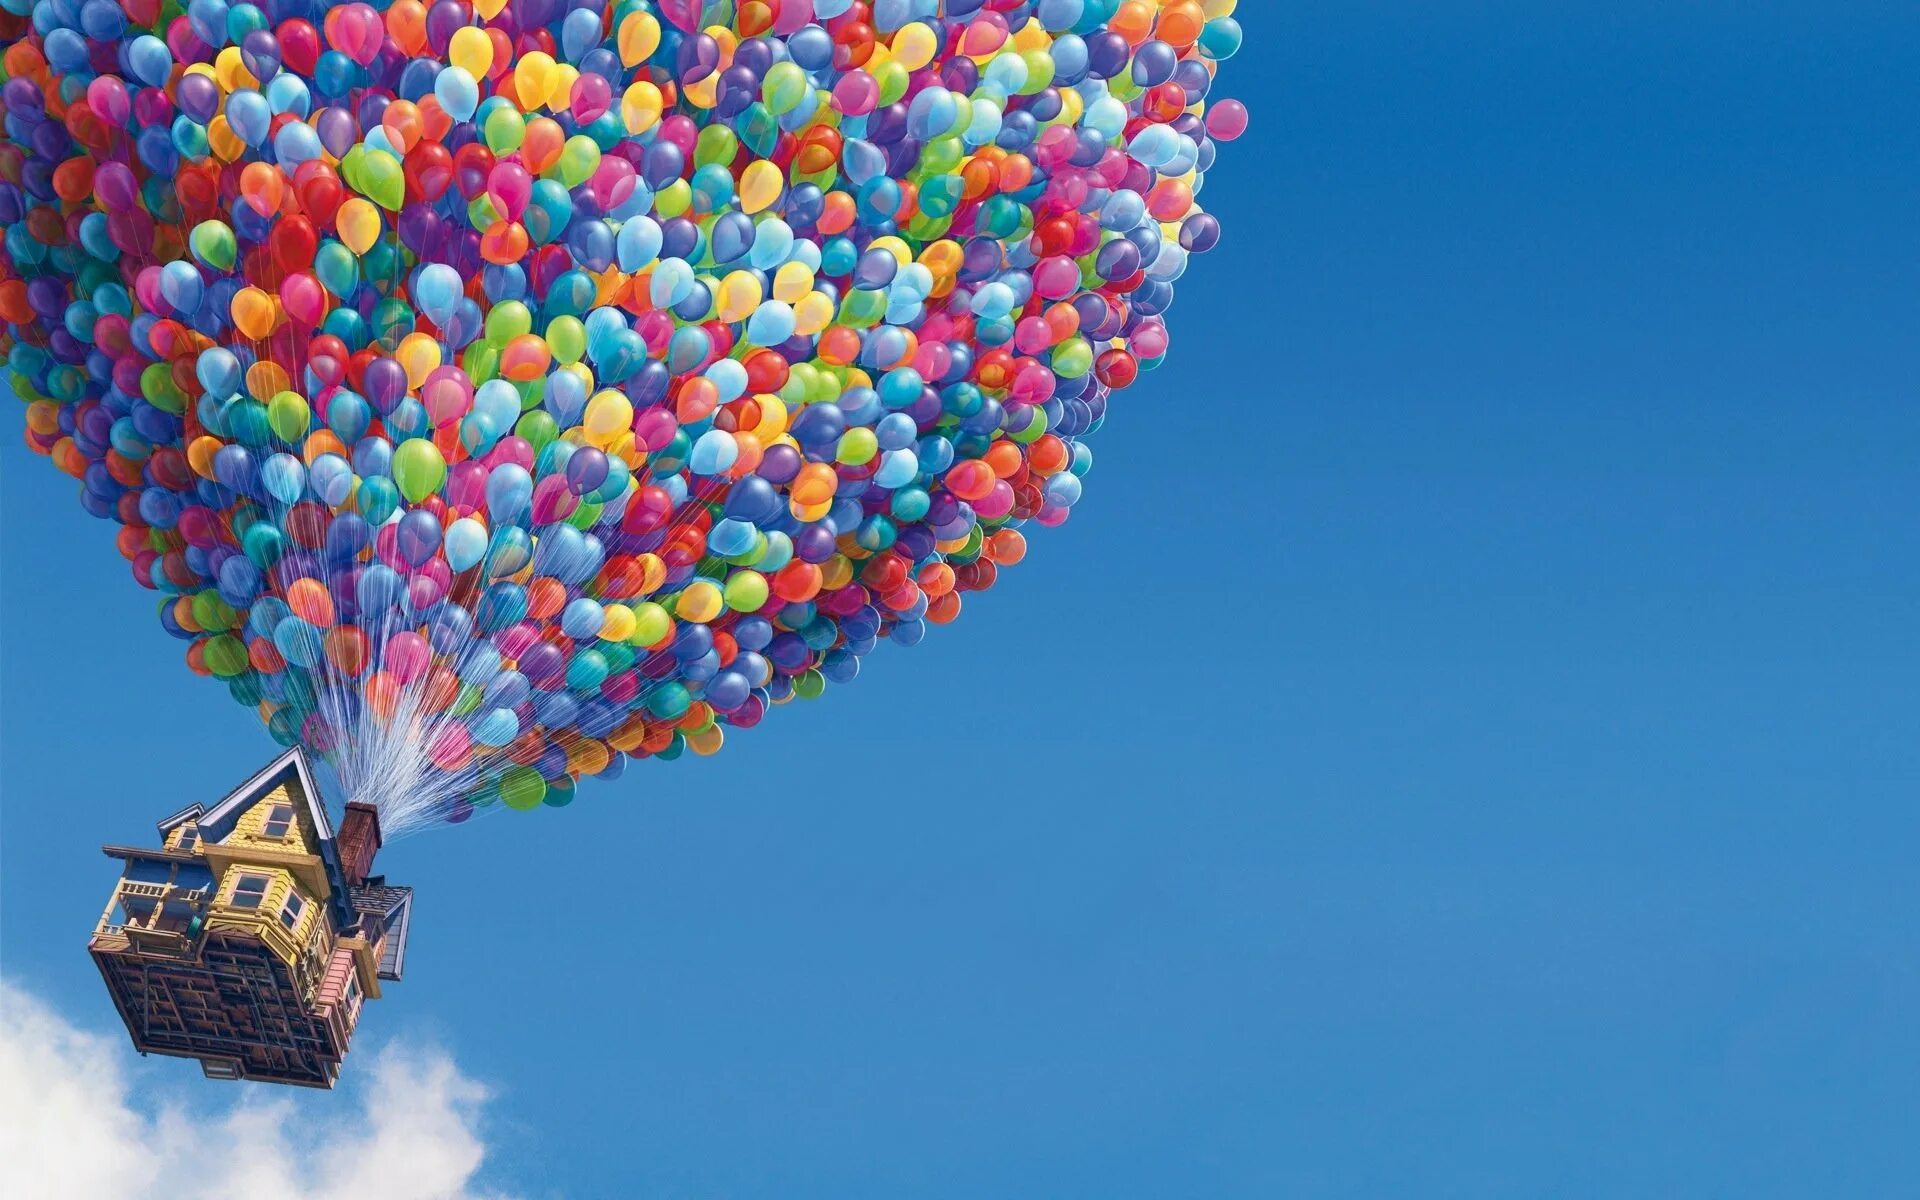 Воздушный шар увлекаемый бурей несся вращаясь. Воздушный шарик. Шары с днем рождения. С днём рождения шарики. Шарики воздушные картинки.